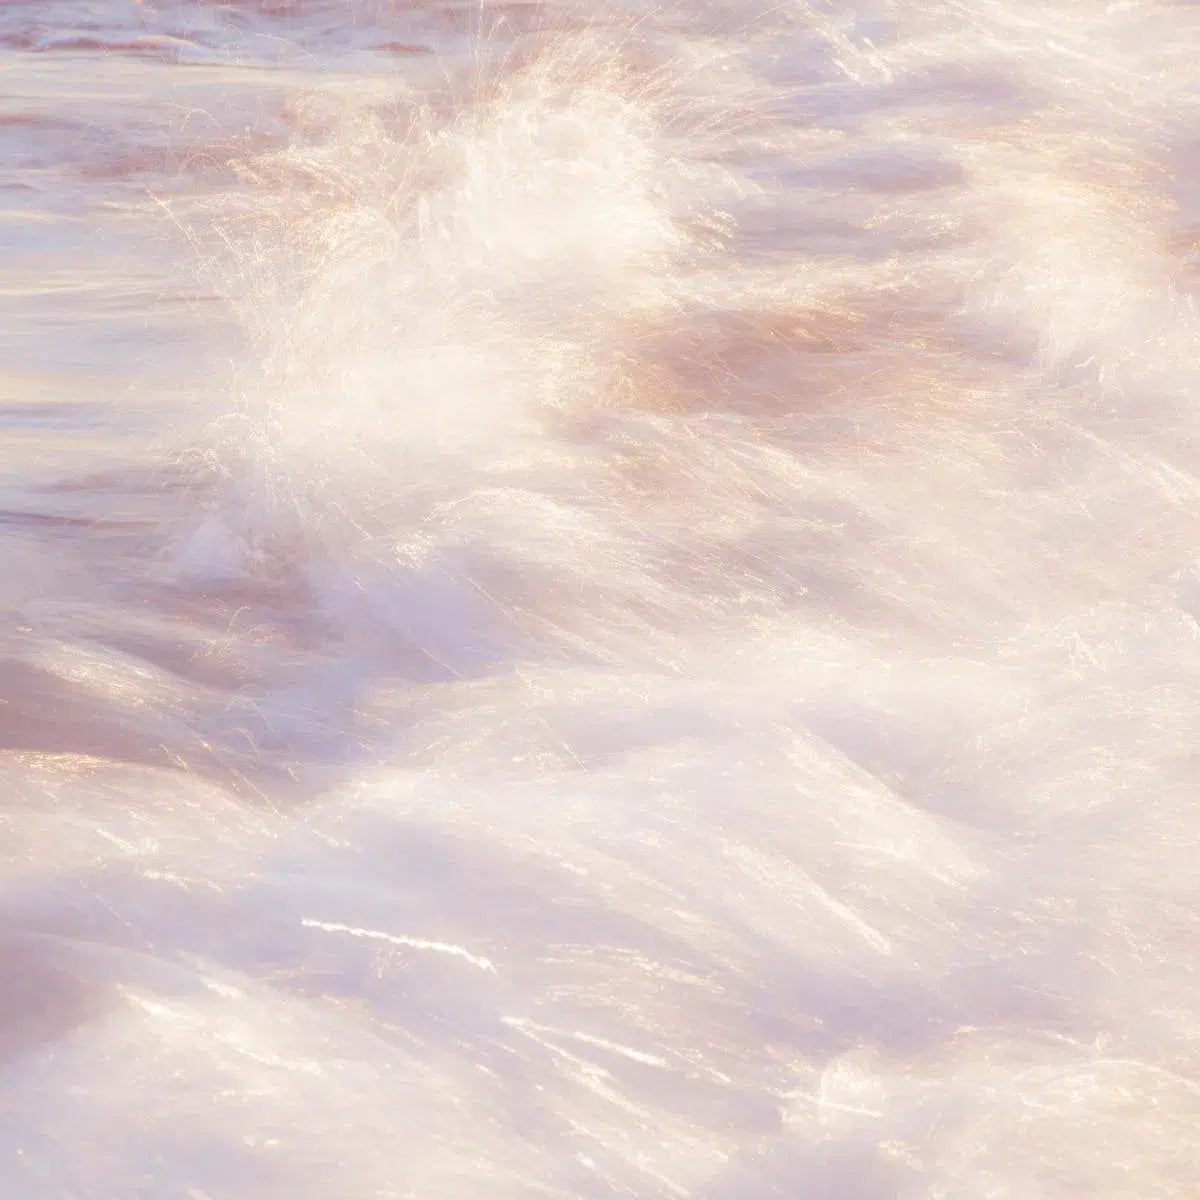 Sakynthos waves 6, by Mats Gustafsson-PurePhoto